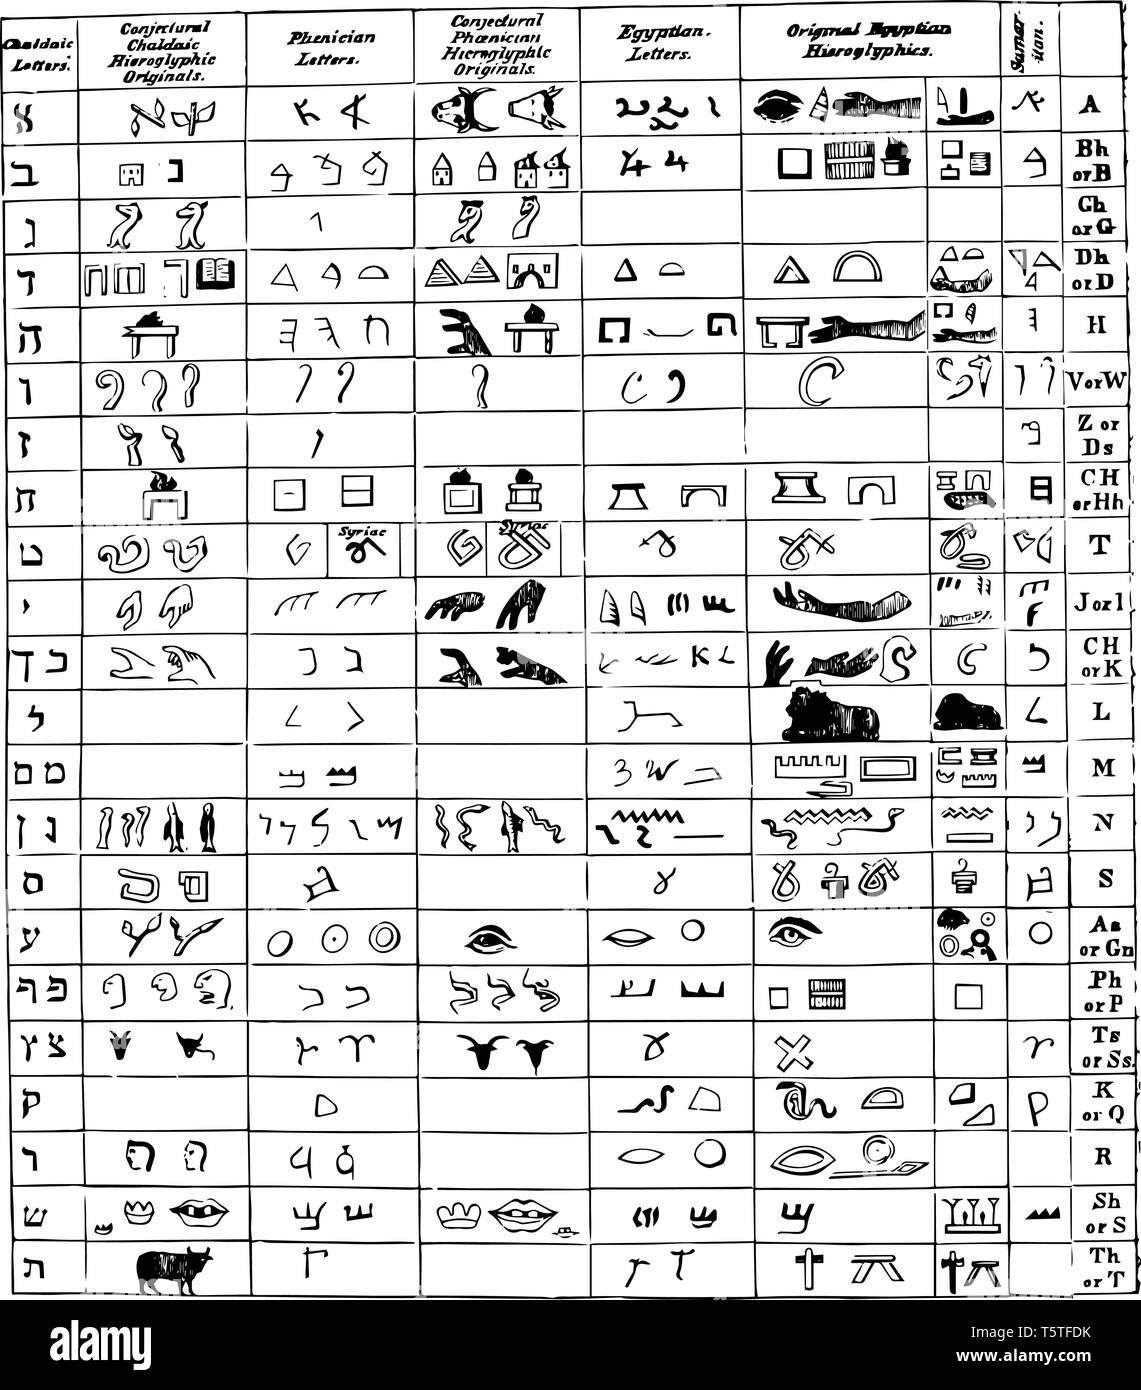 Diese Abbildung stellt die Hieroglyphen vs alte Sprache, vintage Strichzeichnung oder Gravur Abbildung. Stock Vektor